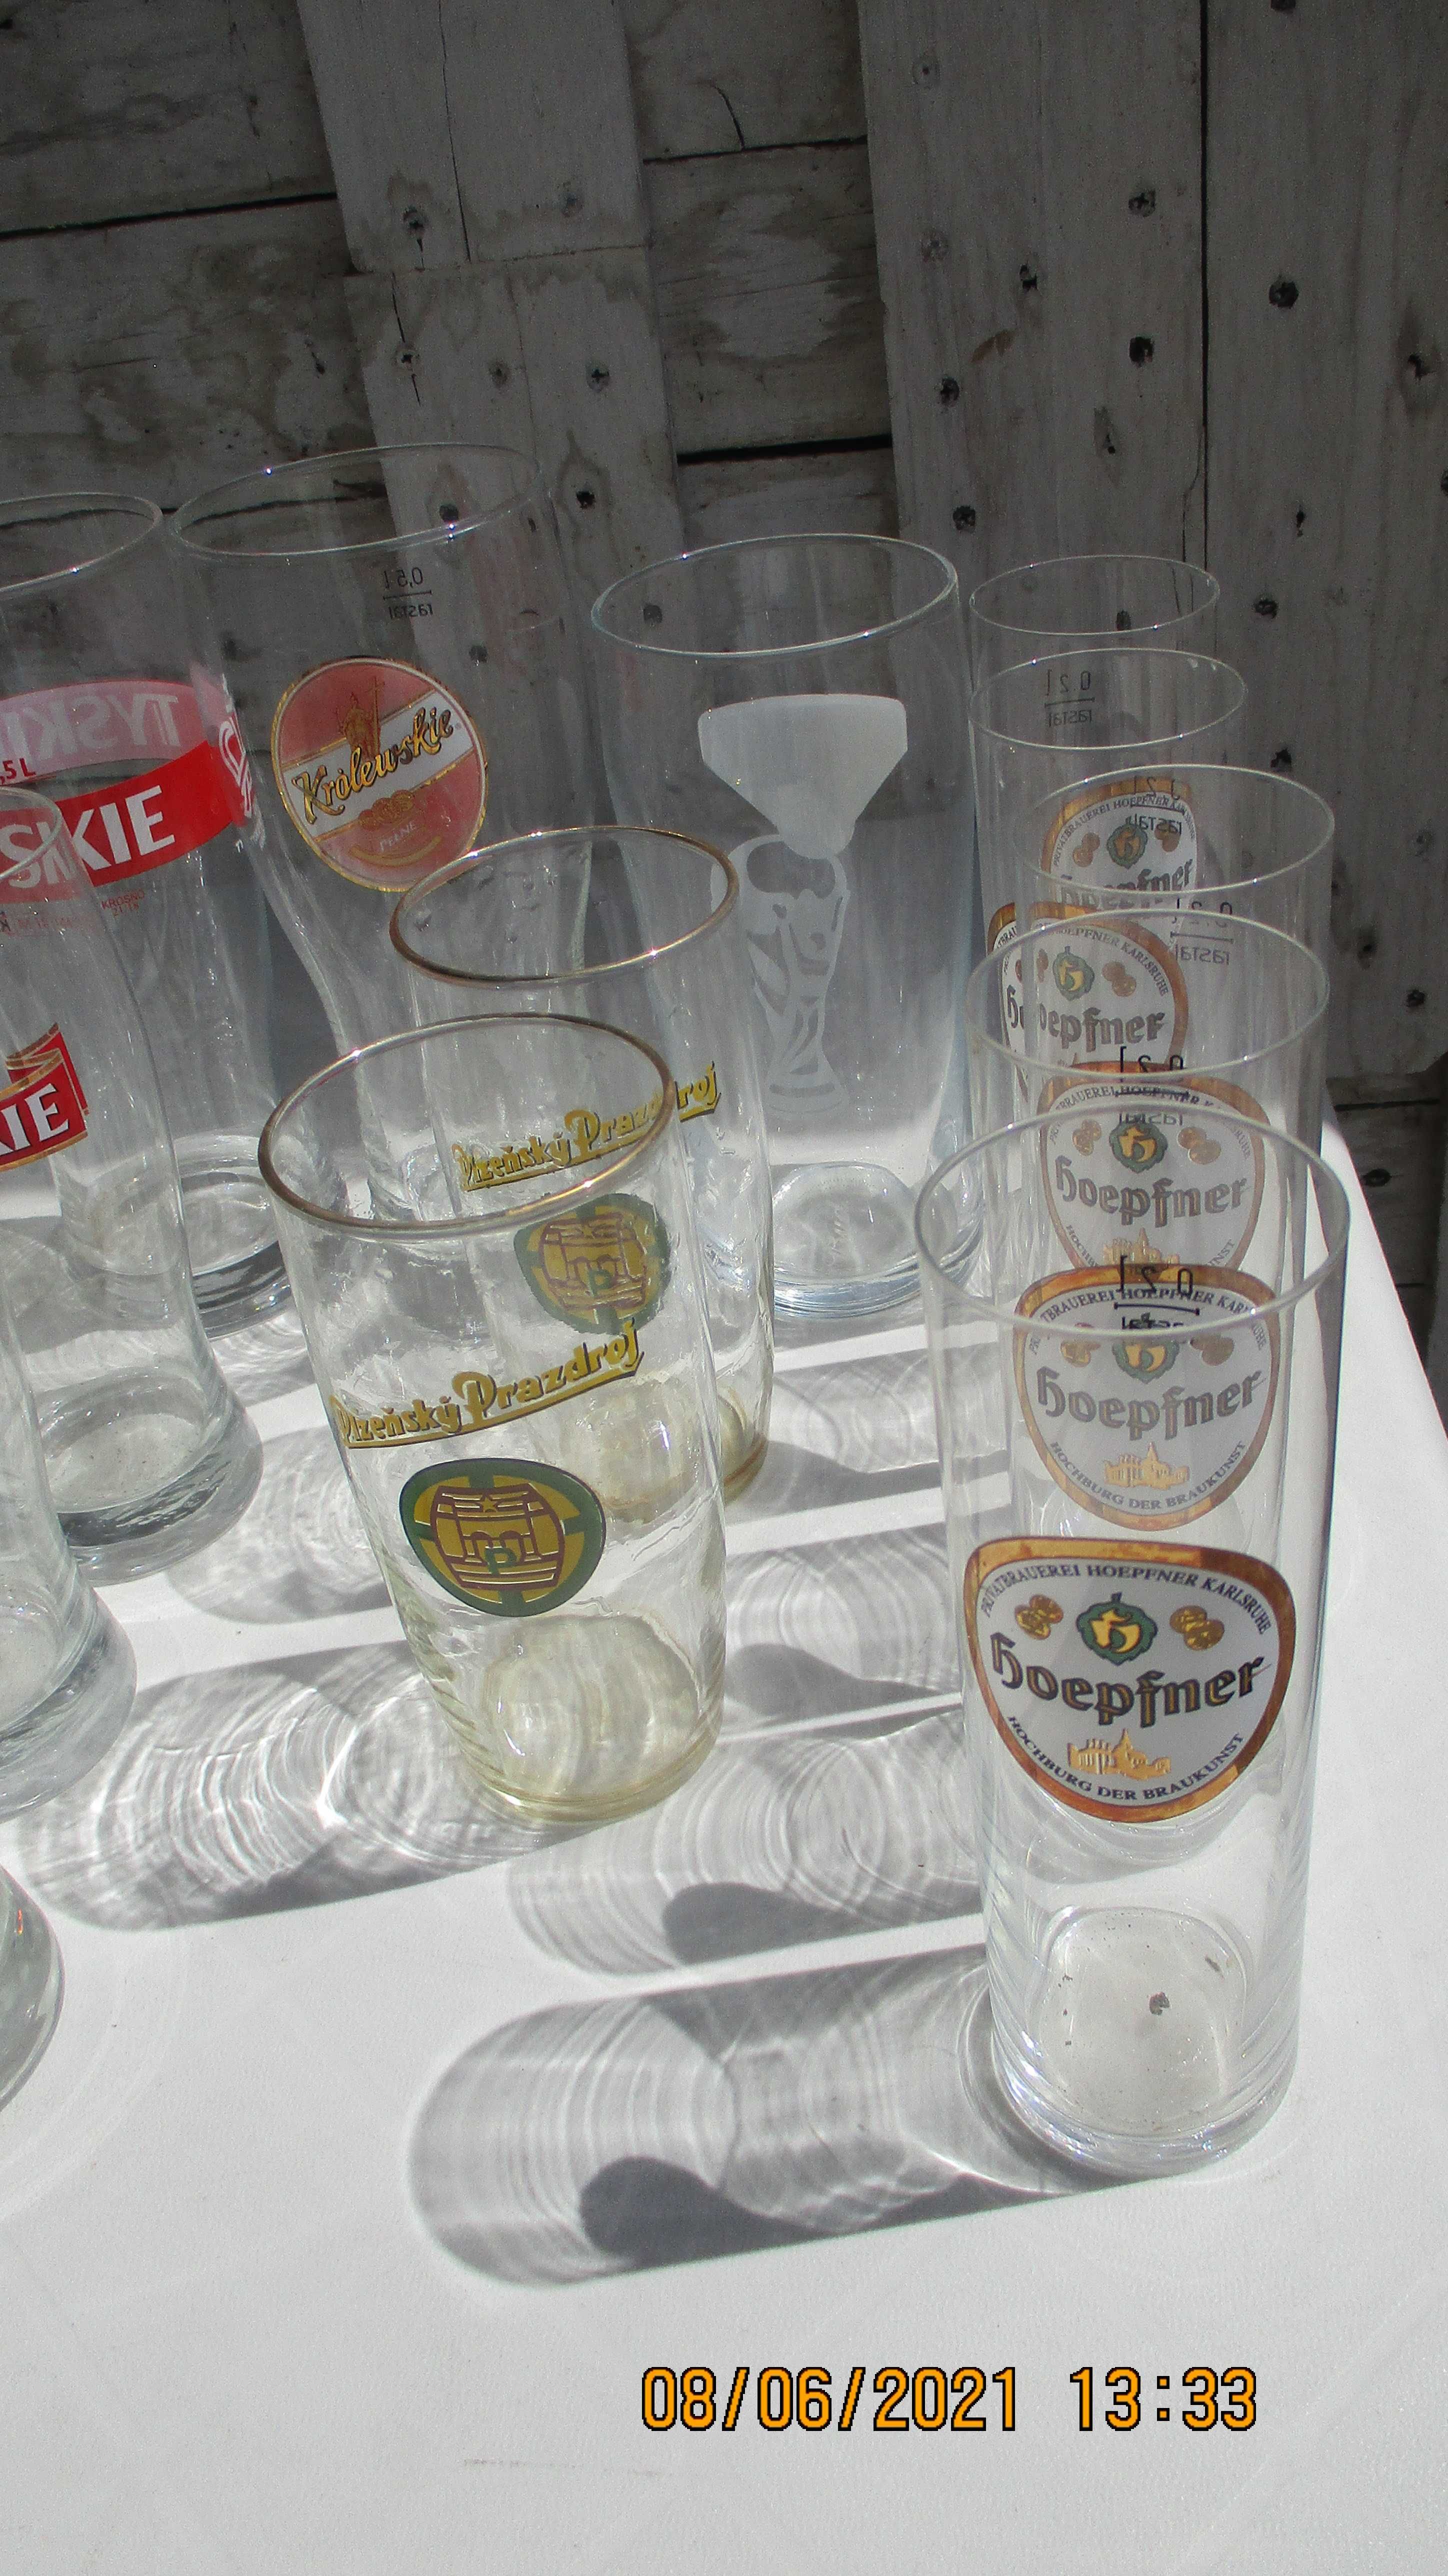 Pokale do piwa polskie i zagraniczne